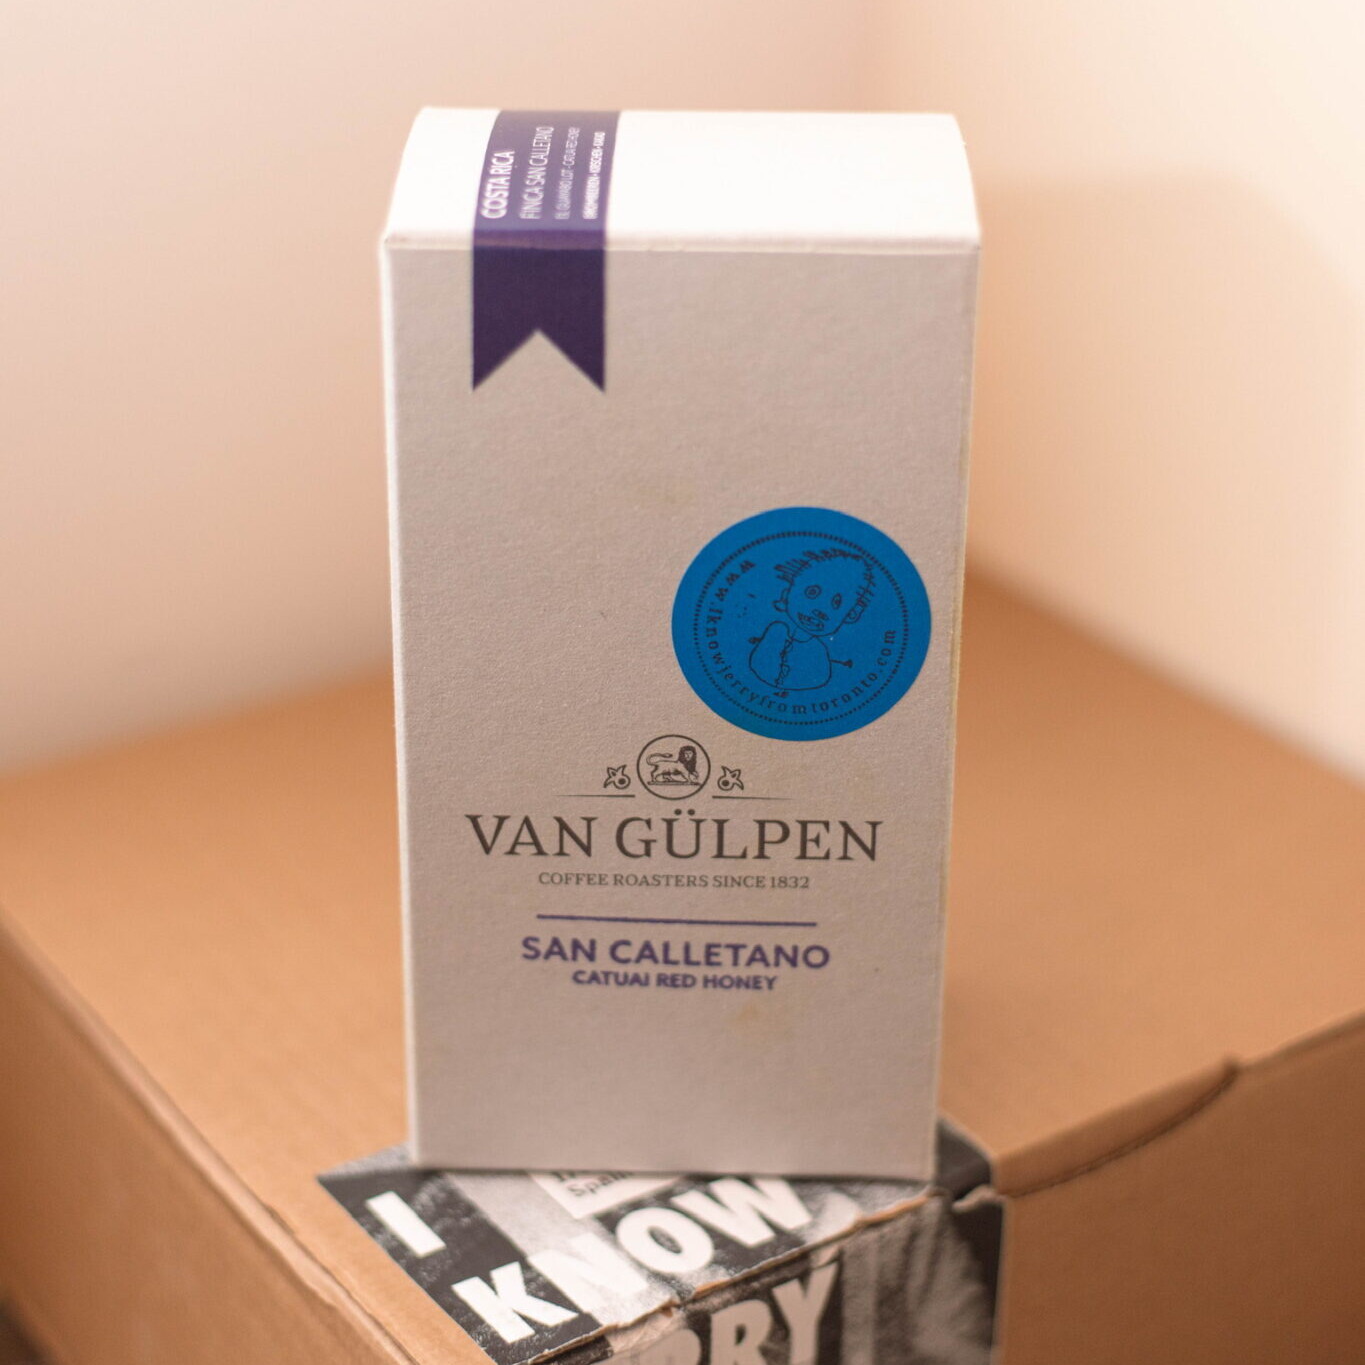 Box of Van Gülpen coffee beans